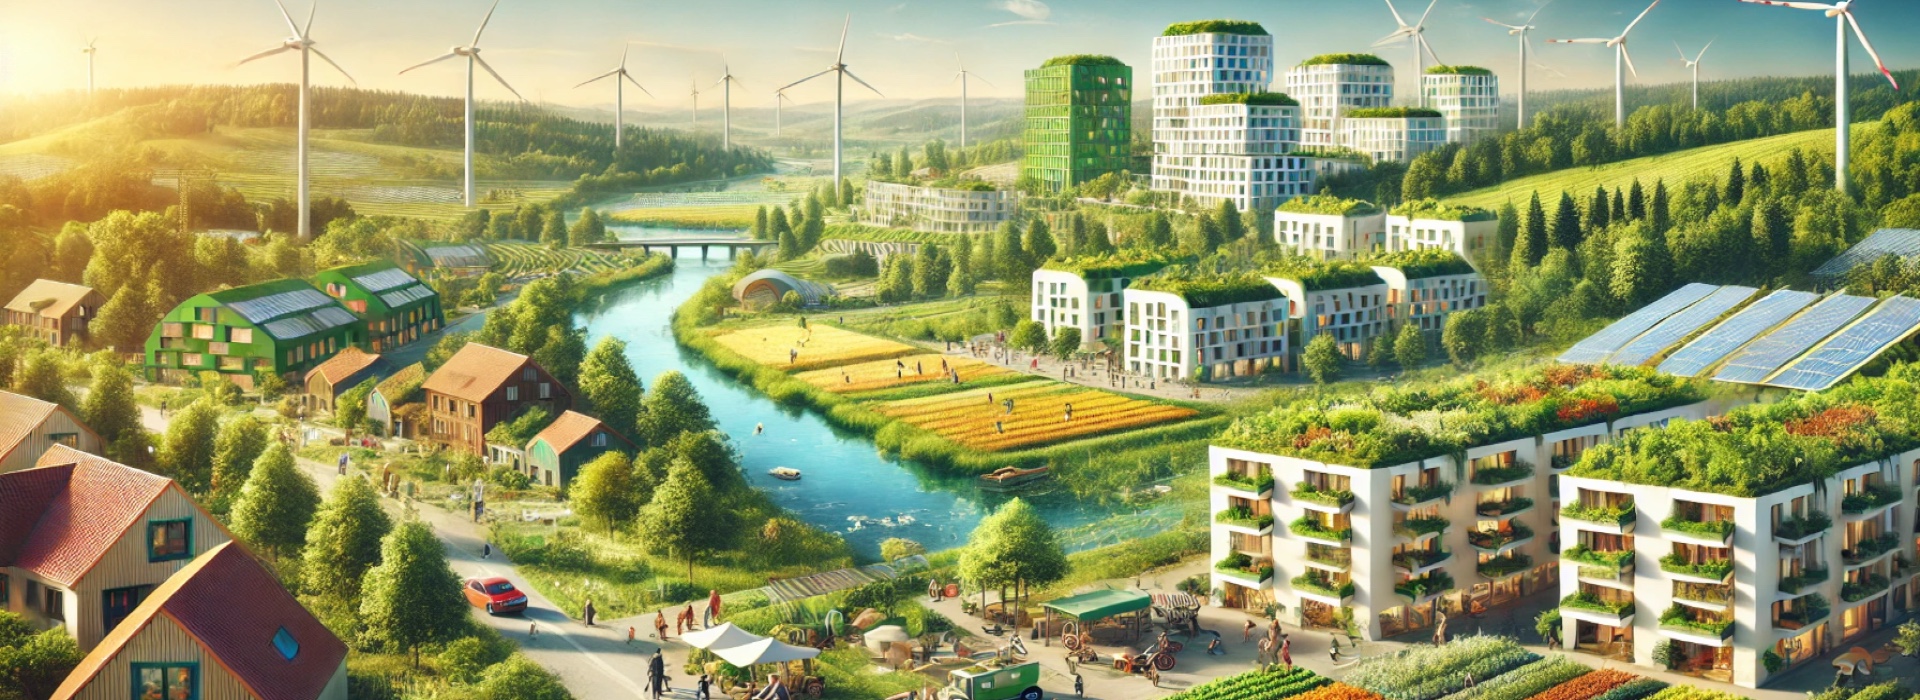 Green Deal Europeo: le soluzioni UE per il clima e la ripresa economica. E c'è chi non è d'accordo